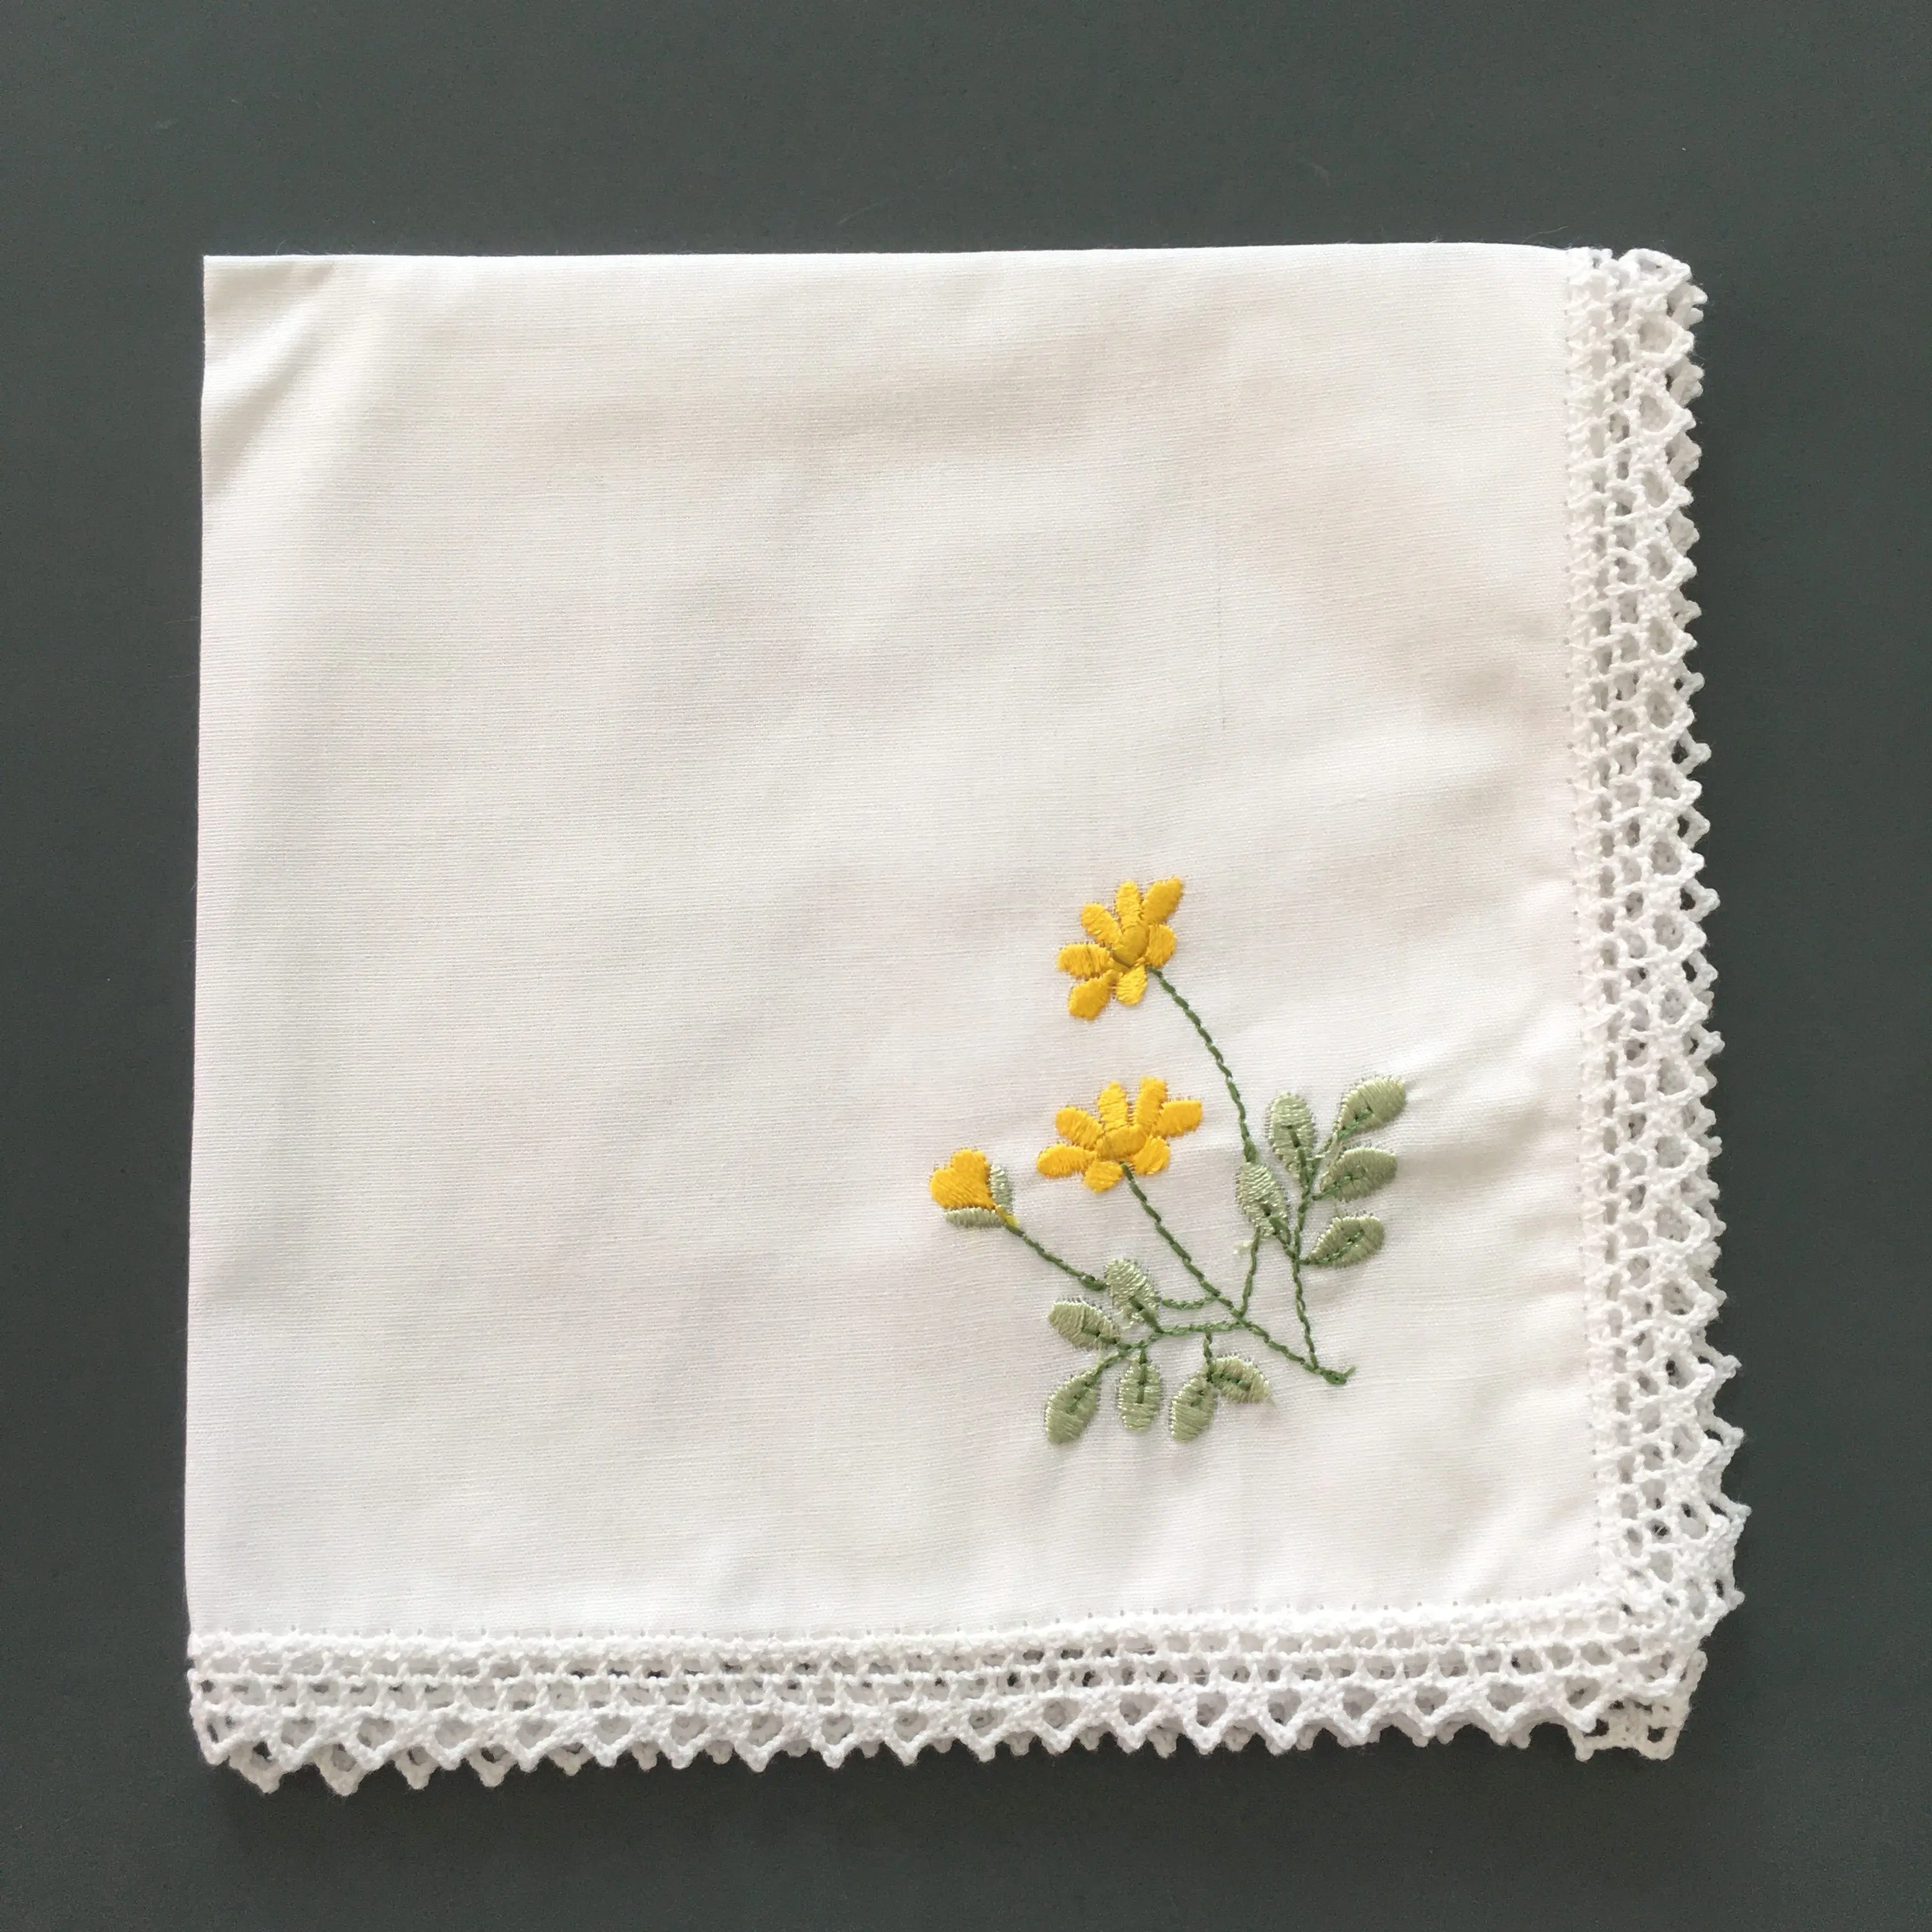 Pañuelo cuadrado de bolsillo de algodón bordado, pañuelo de encaje, color blanco